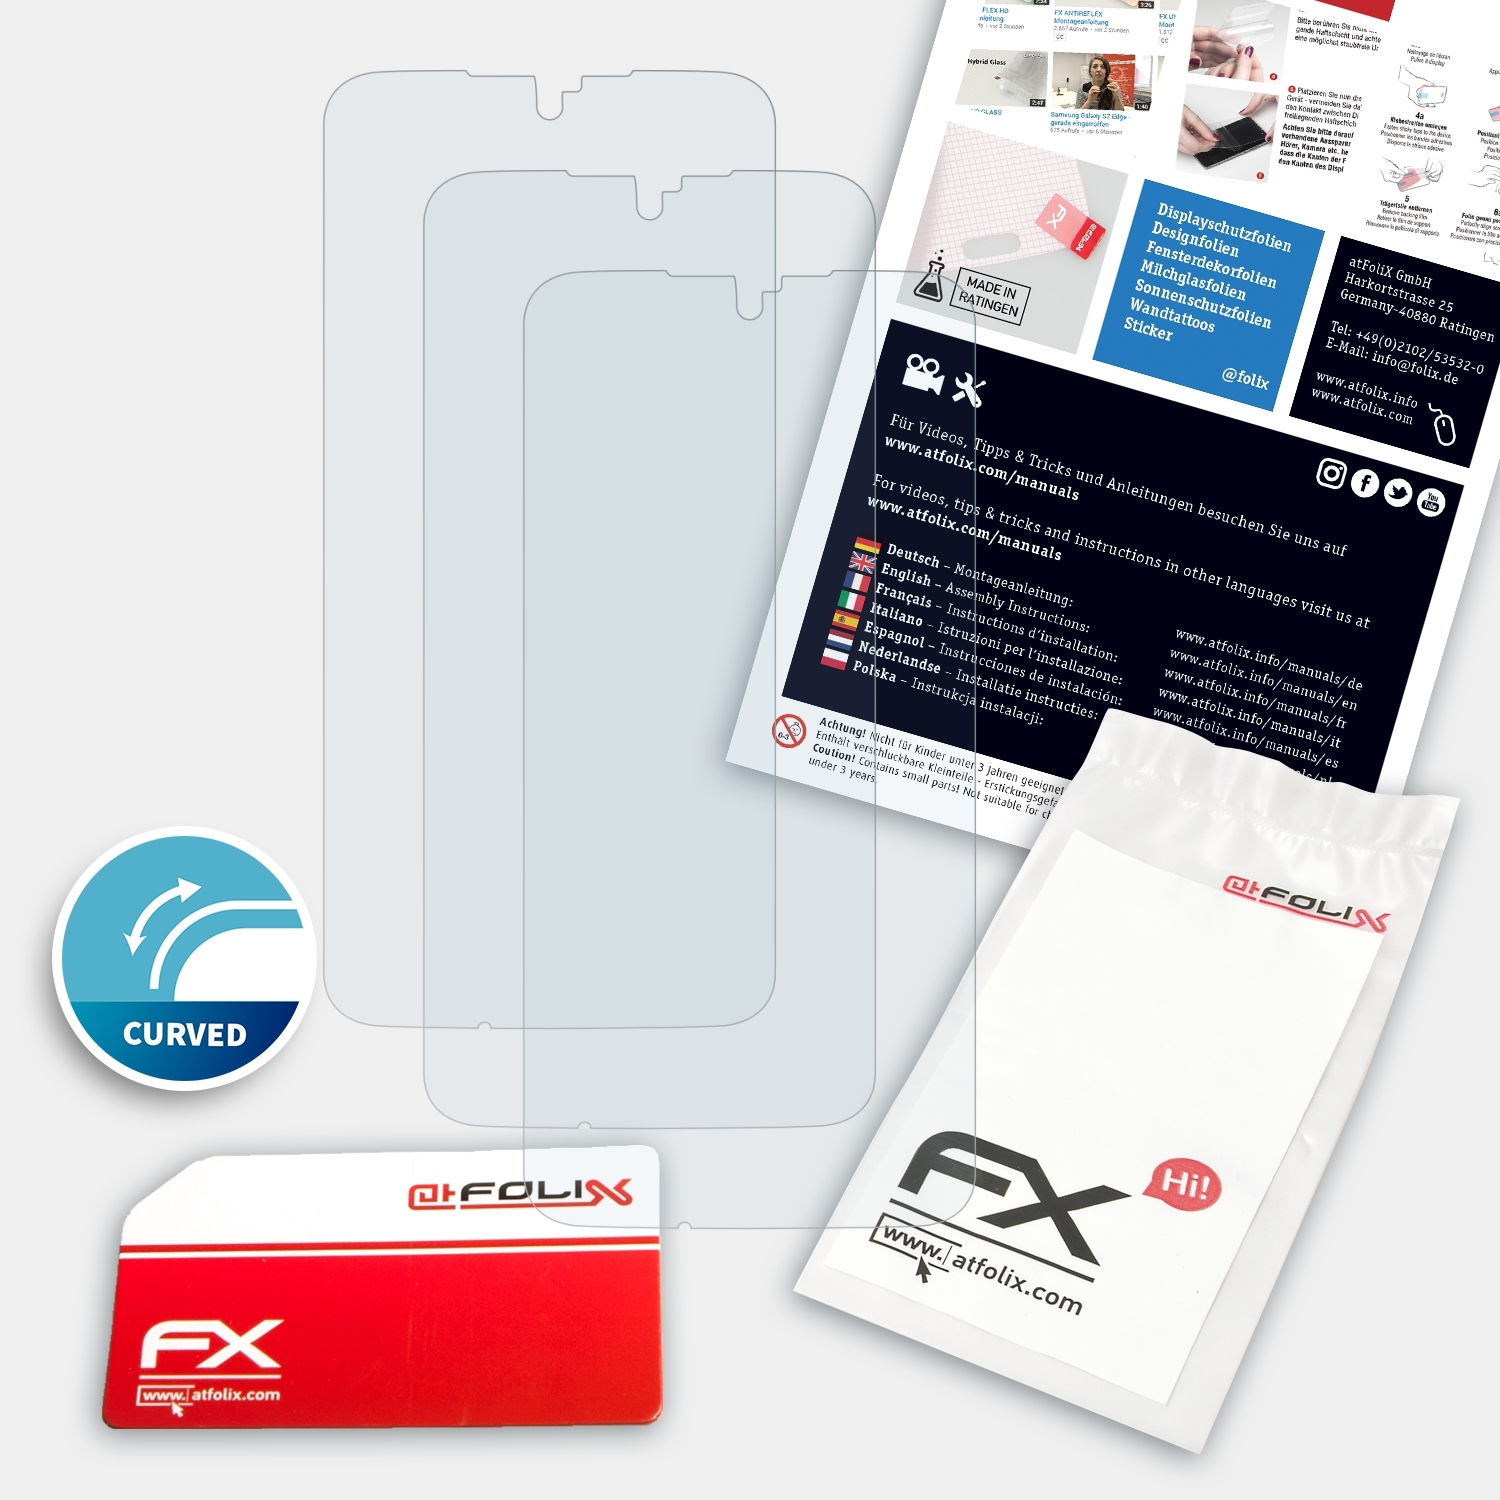 Displayschutz(für 3x Revvlry+) T-Mobile ATFOLIX FX-ActiFleX